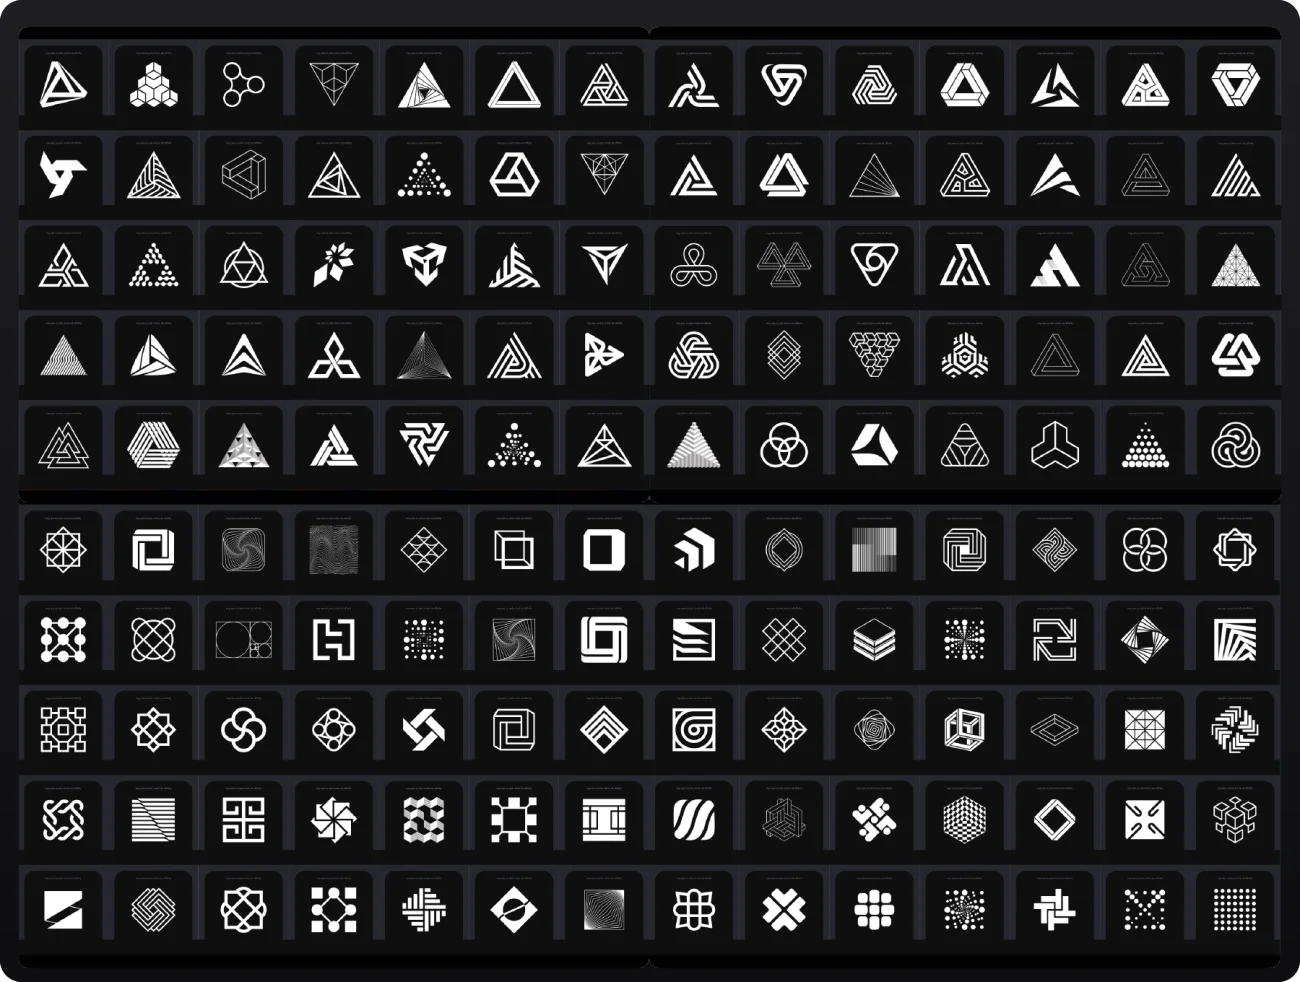 超过1000款用于设计logo的预设矢量形状图形 Logo Shape Pack .sketch .psd .ai插图11